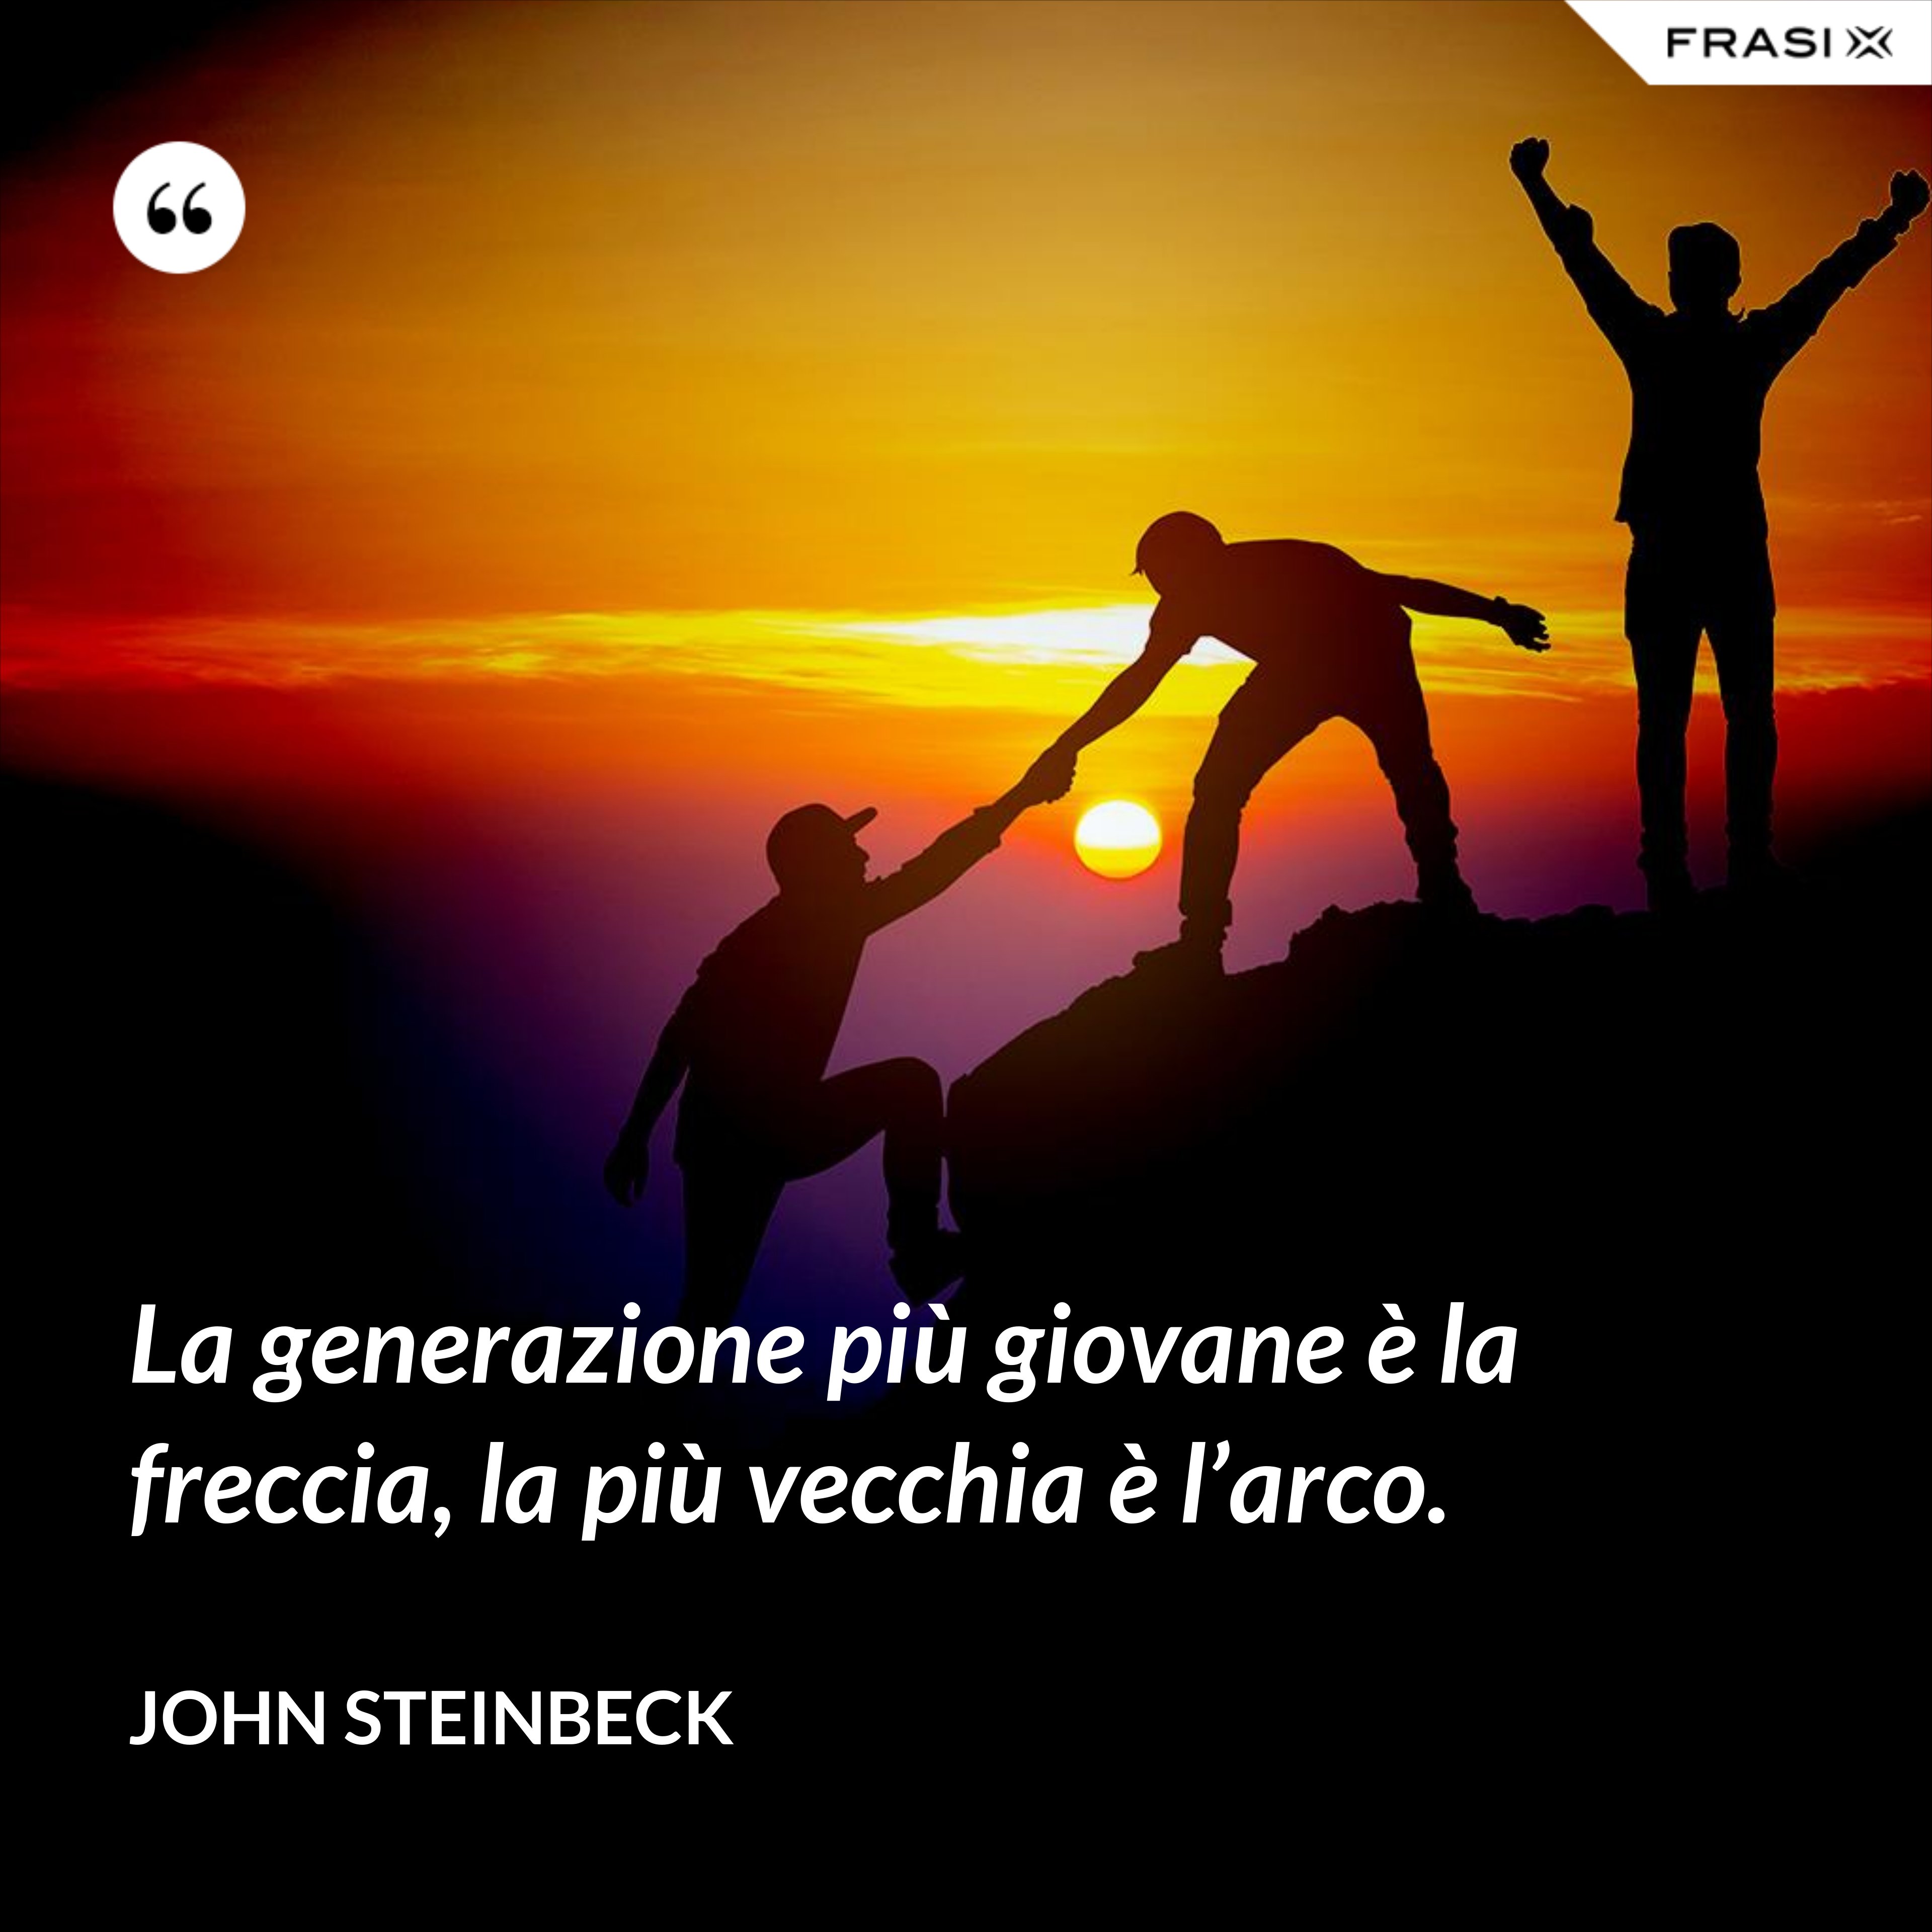 La generazione più giovane è la freccia, la più vecchia è l’arco. - John Steinbeck